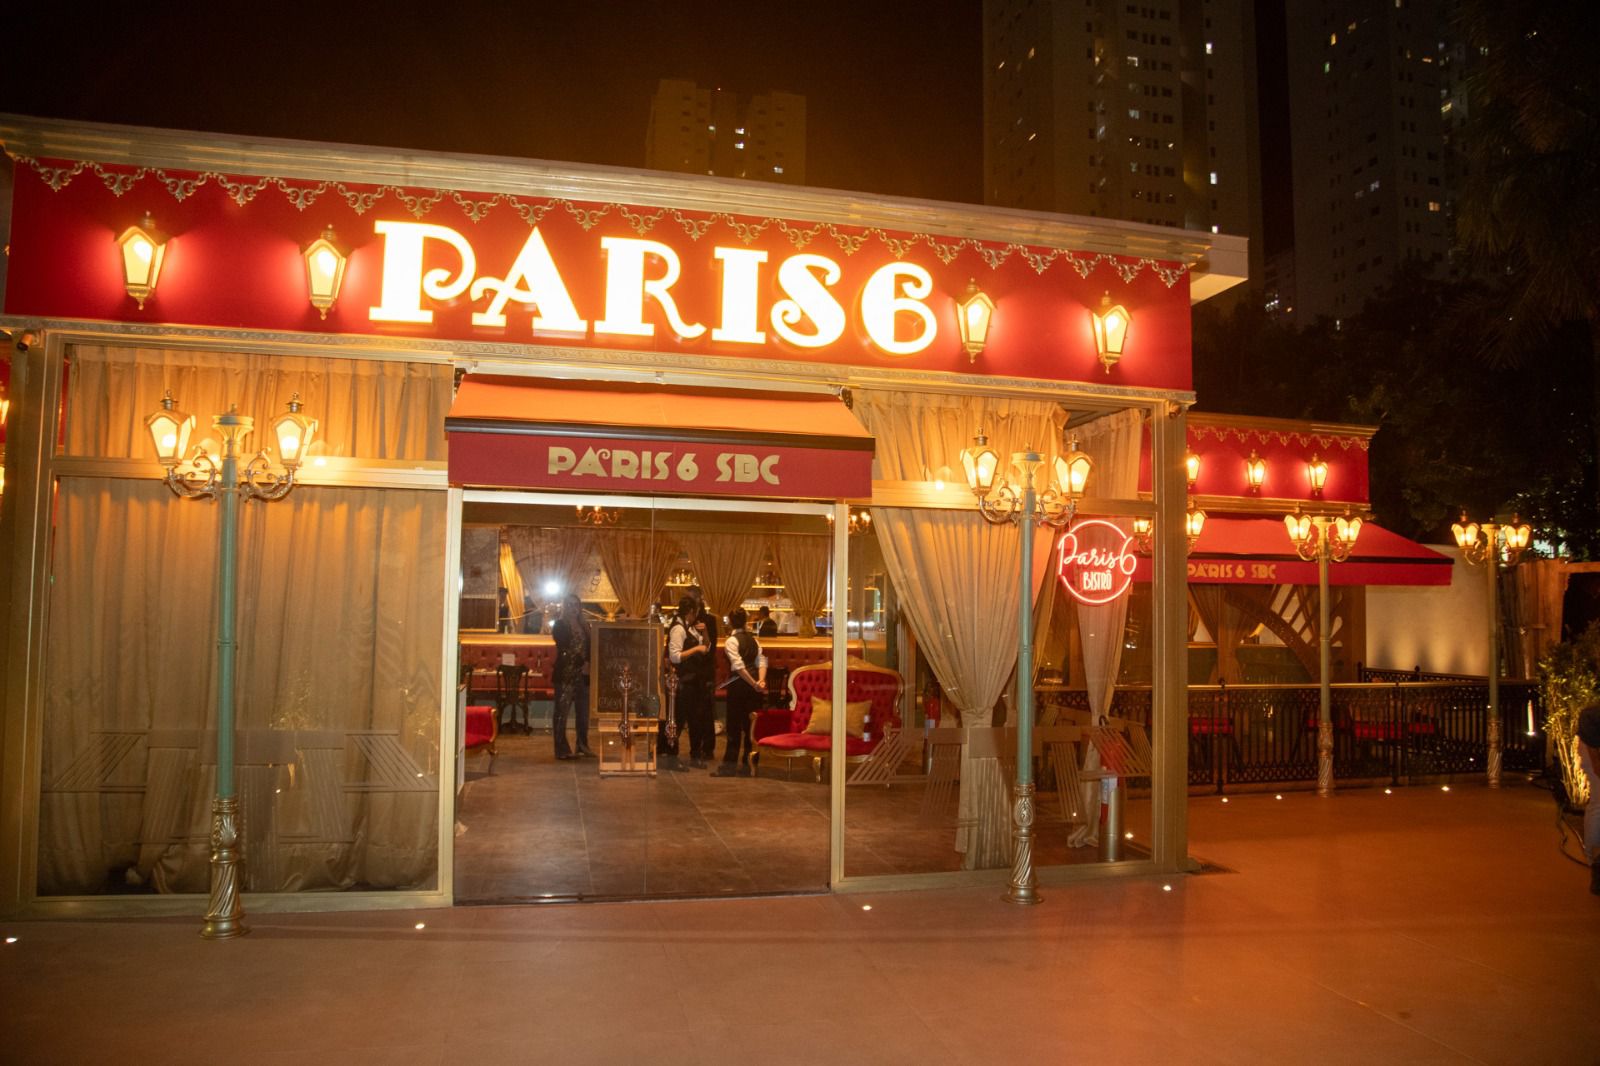 Gastronomia: Paris 6 abre as portas em São Bernardo. Veja vídeos - ABC em  OFF